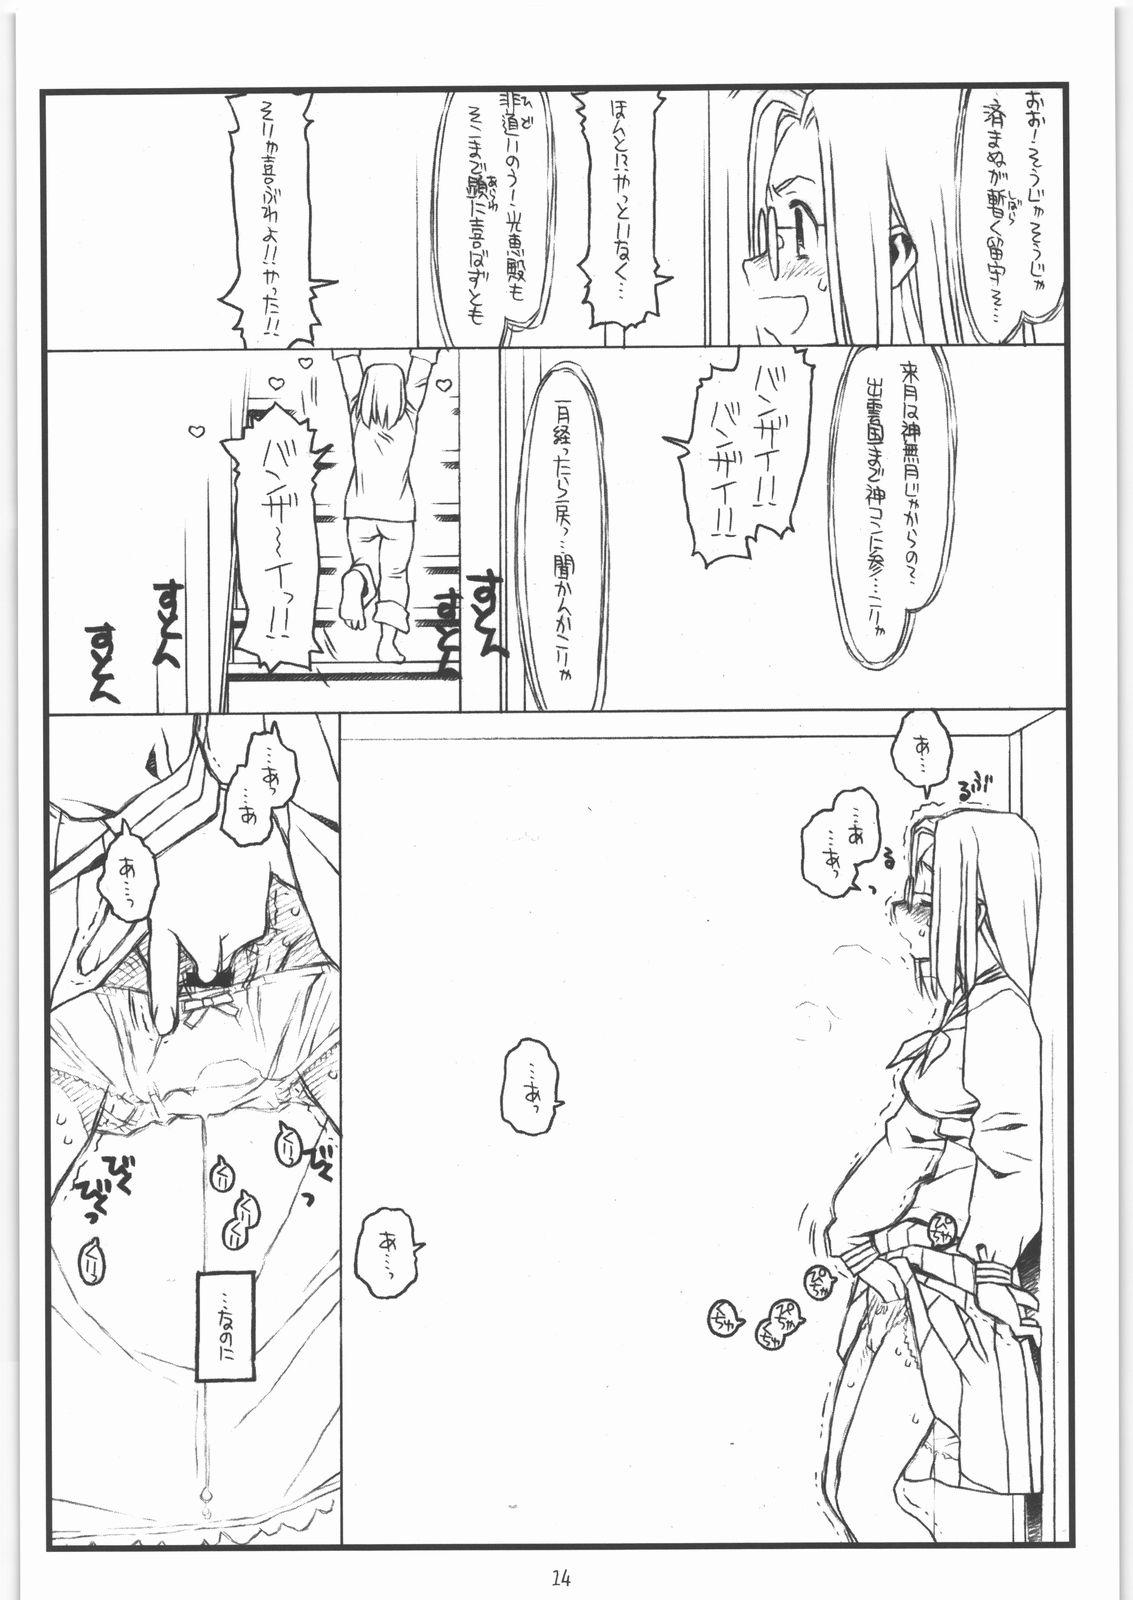 Black Cock Kamisama no Inai Tsuki - Kamichu Usa - Page 13